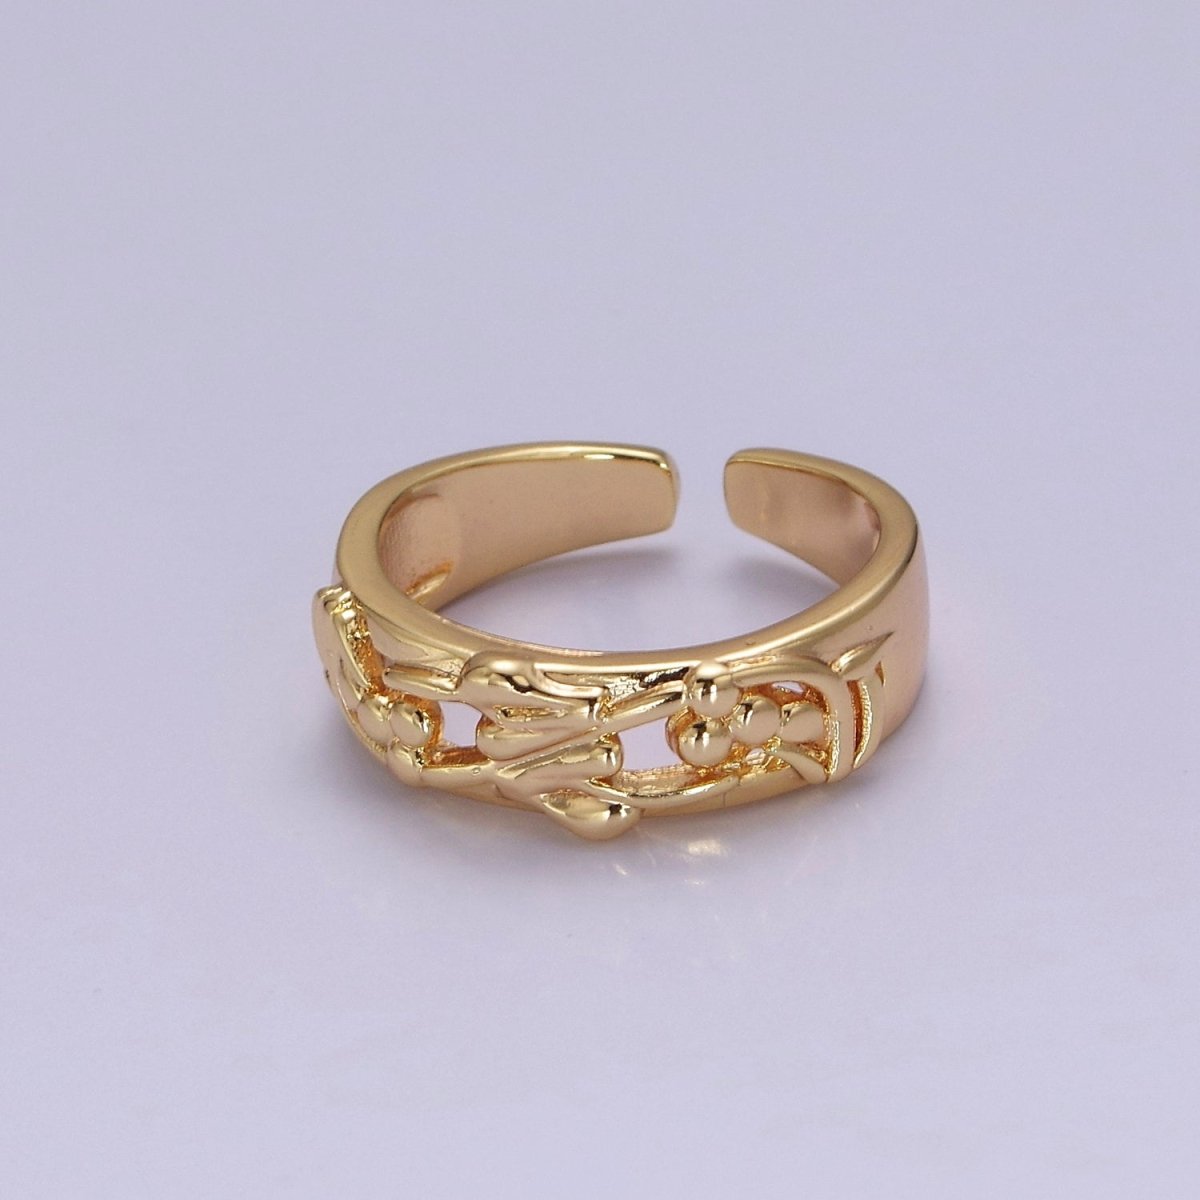 Dainty Art Deco Ring Flower Carved Design 18k Gold Filled Open Adjustable Ring O-2076 - DLUXCA